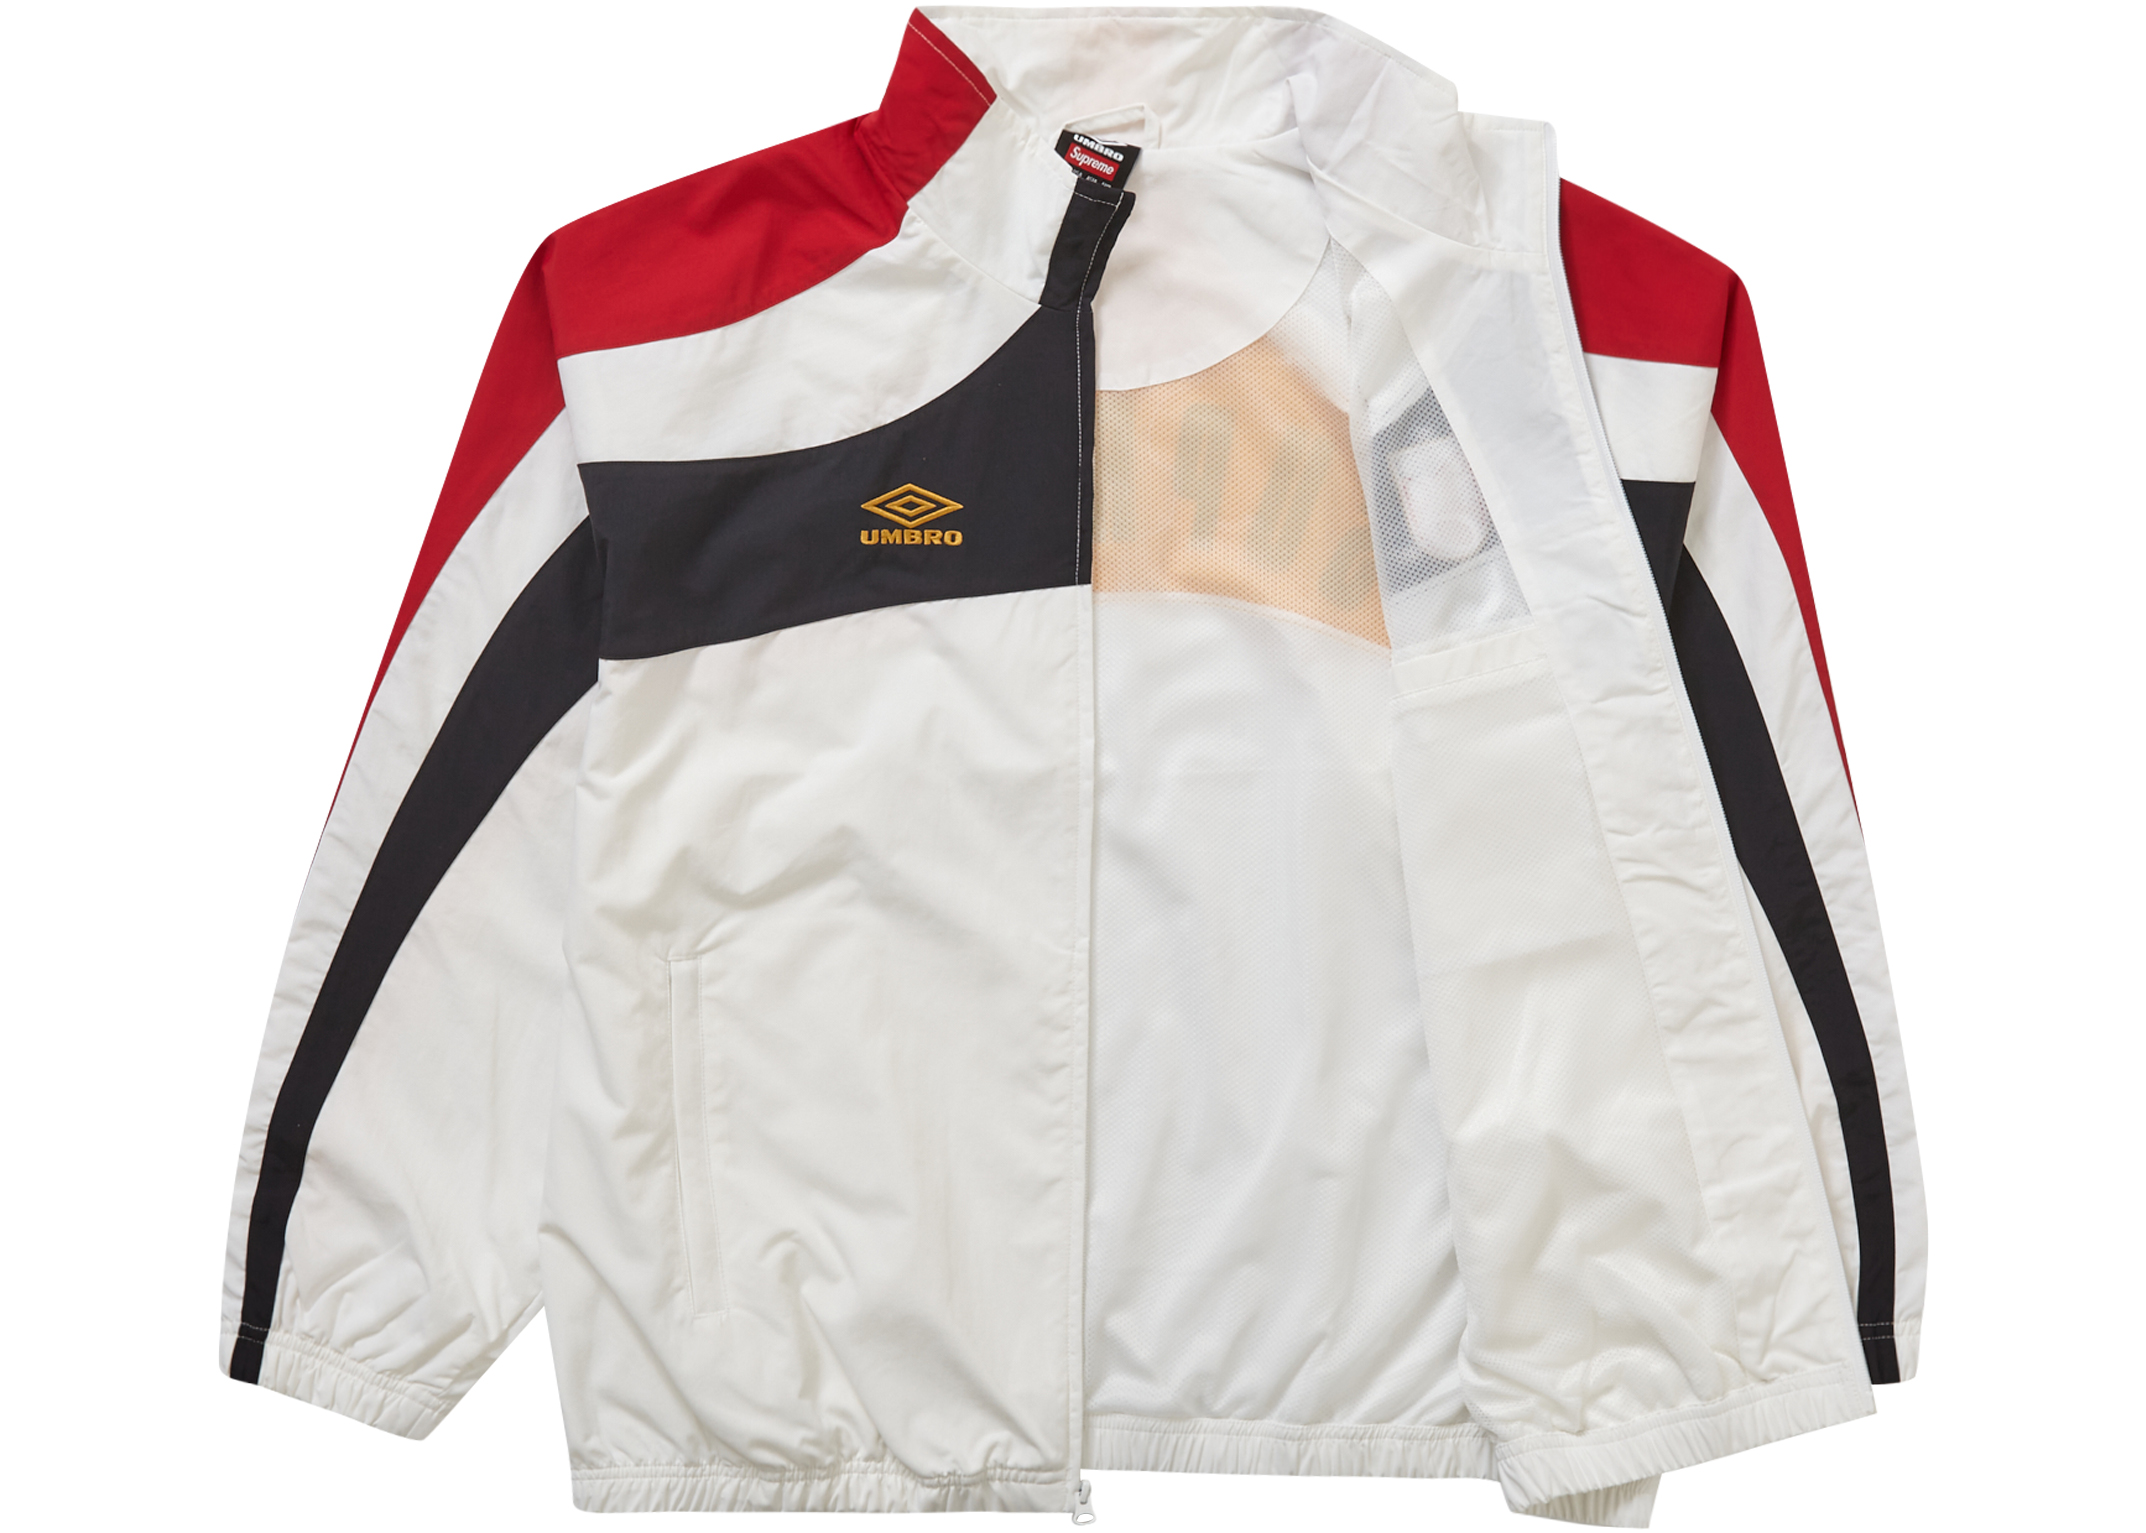 18,550円Supreme Umbro Track Jacket White